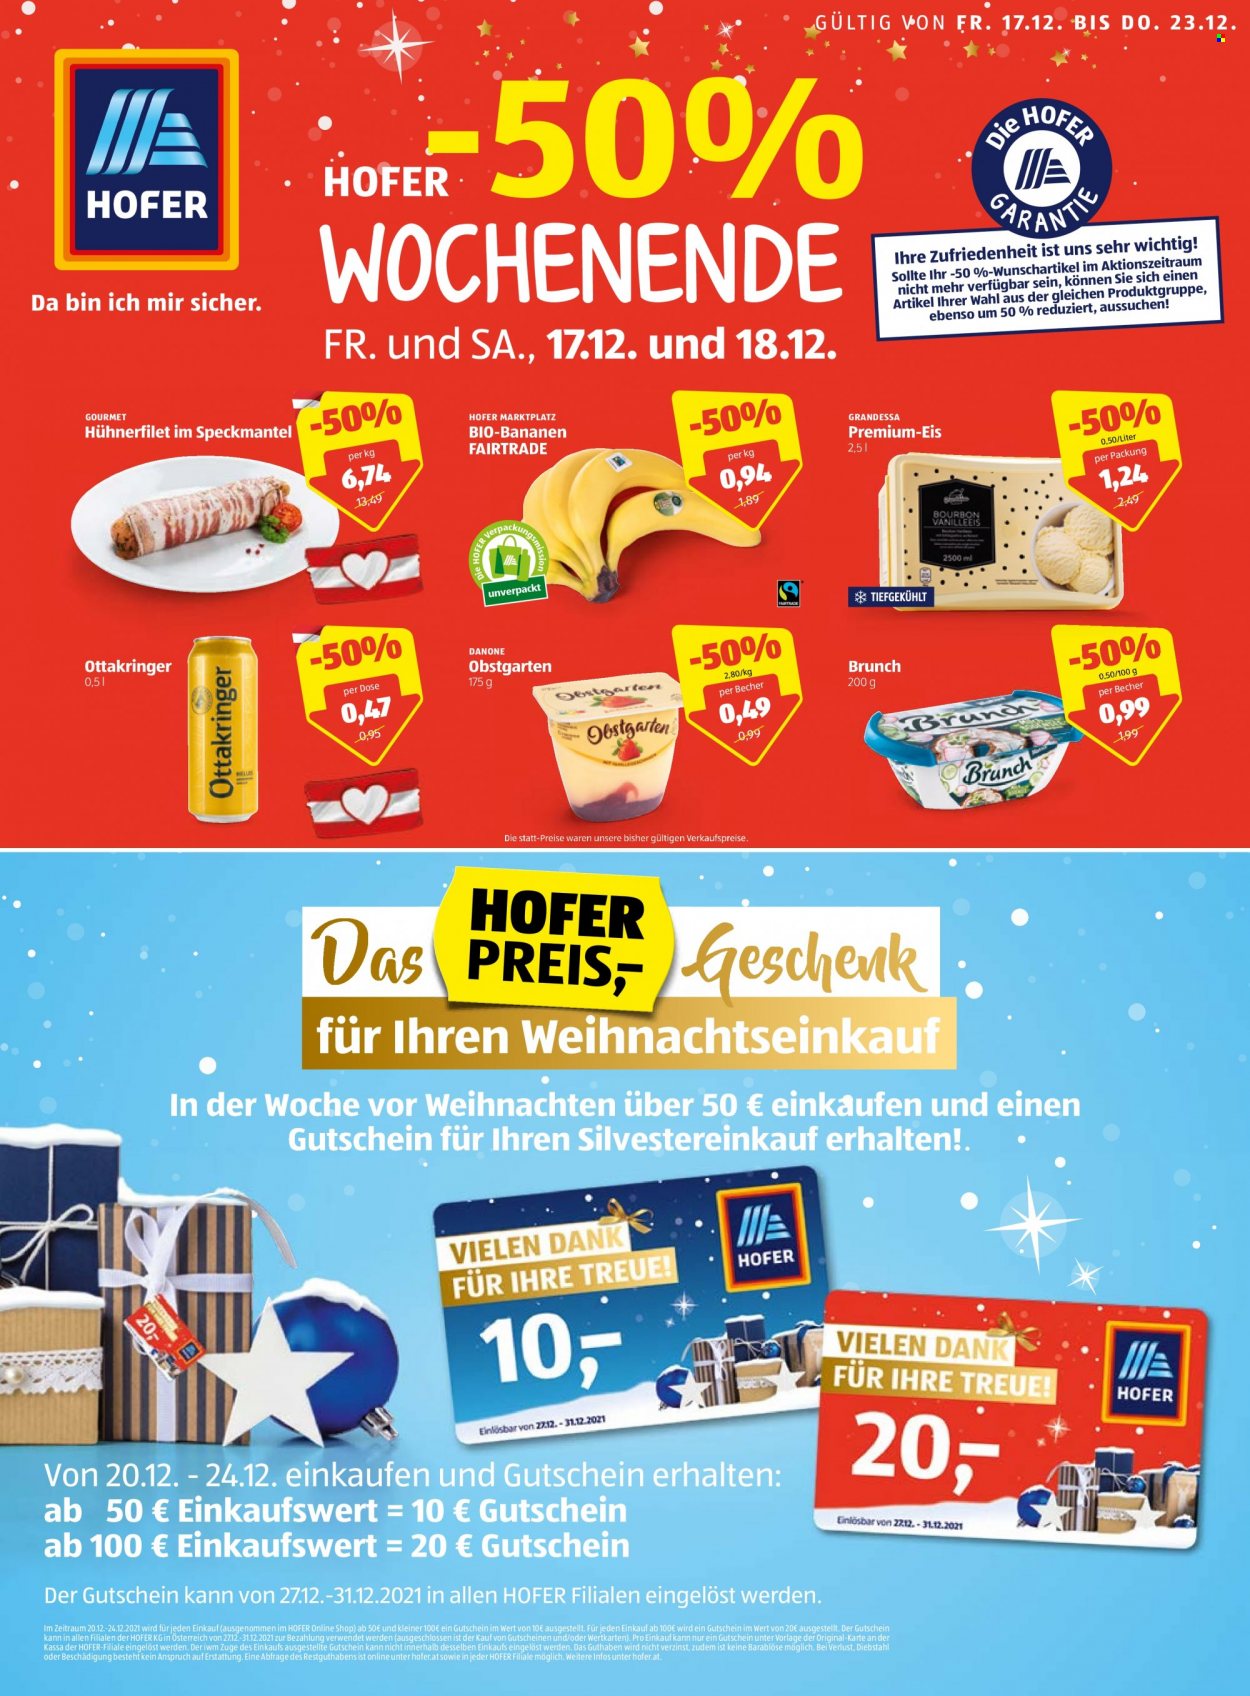 Angebote Hofer - 17.12.2021 - 23.12.2021 - Verkaufsprodukte - Hähnchenfleisch, Hühnerfilet, Bananen, Bio-Bananen, Danone, Obstgarten, Eis, Bier, Ottakringer. Seite 1.